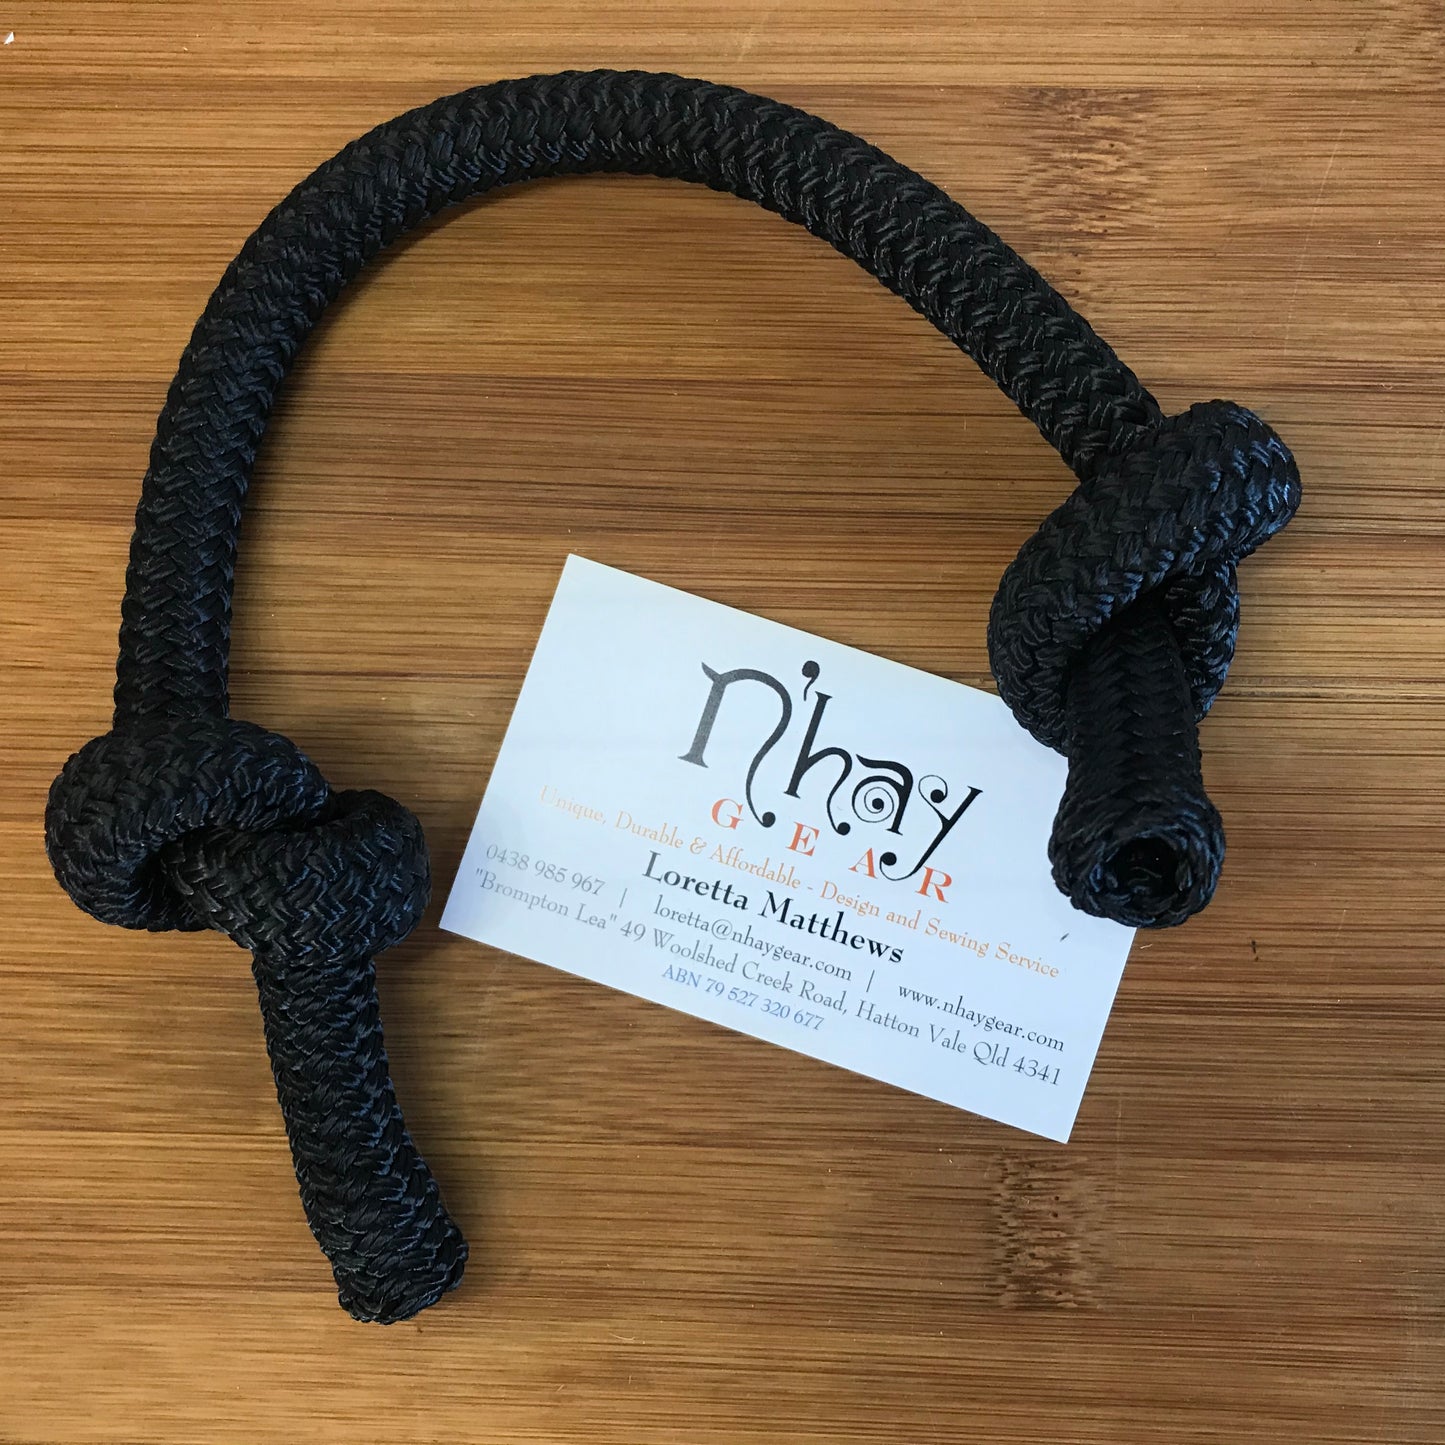 N’hay Gear - Doggy Battle Rope